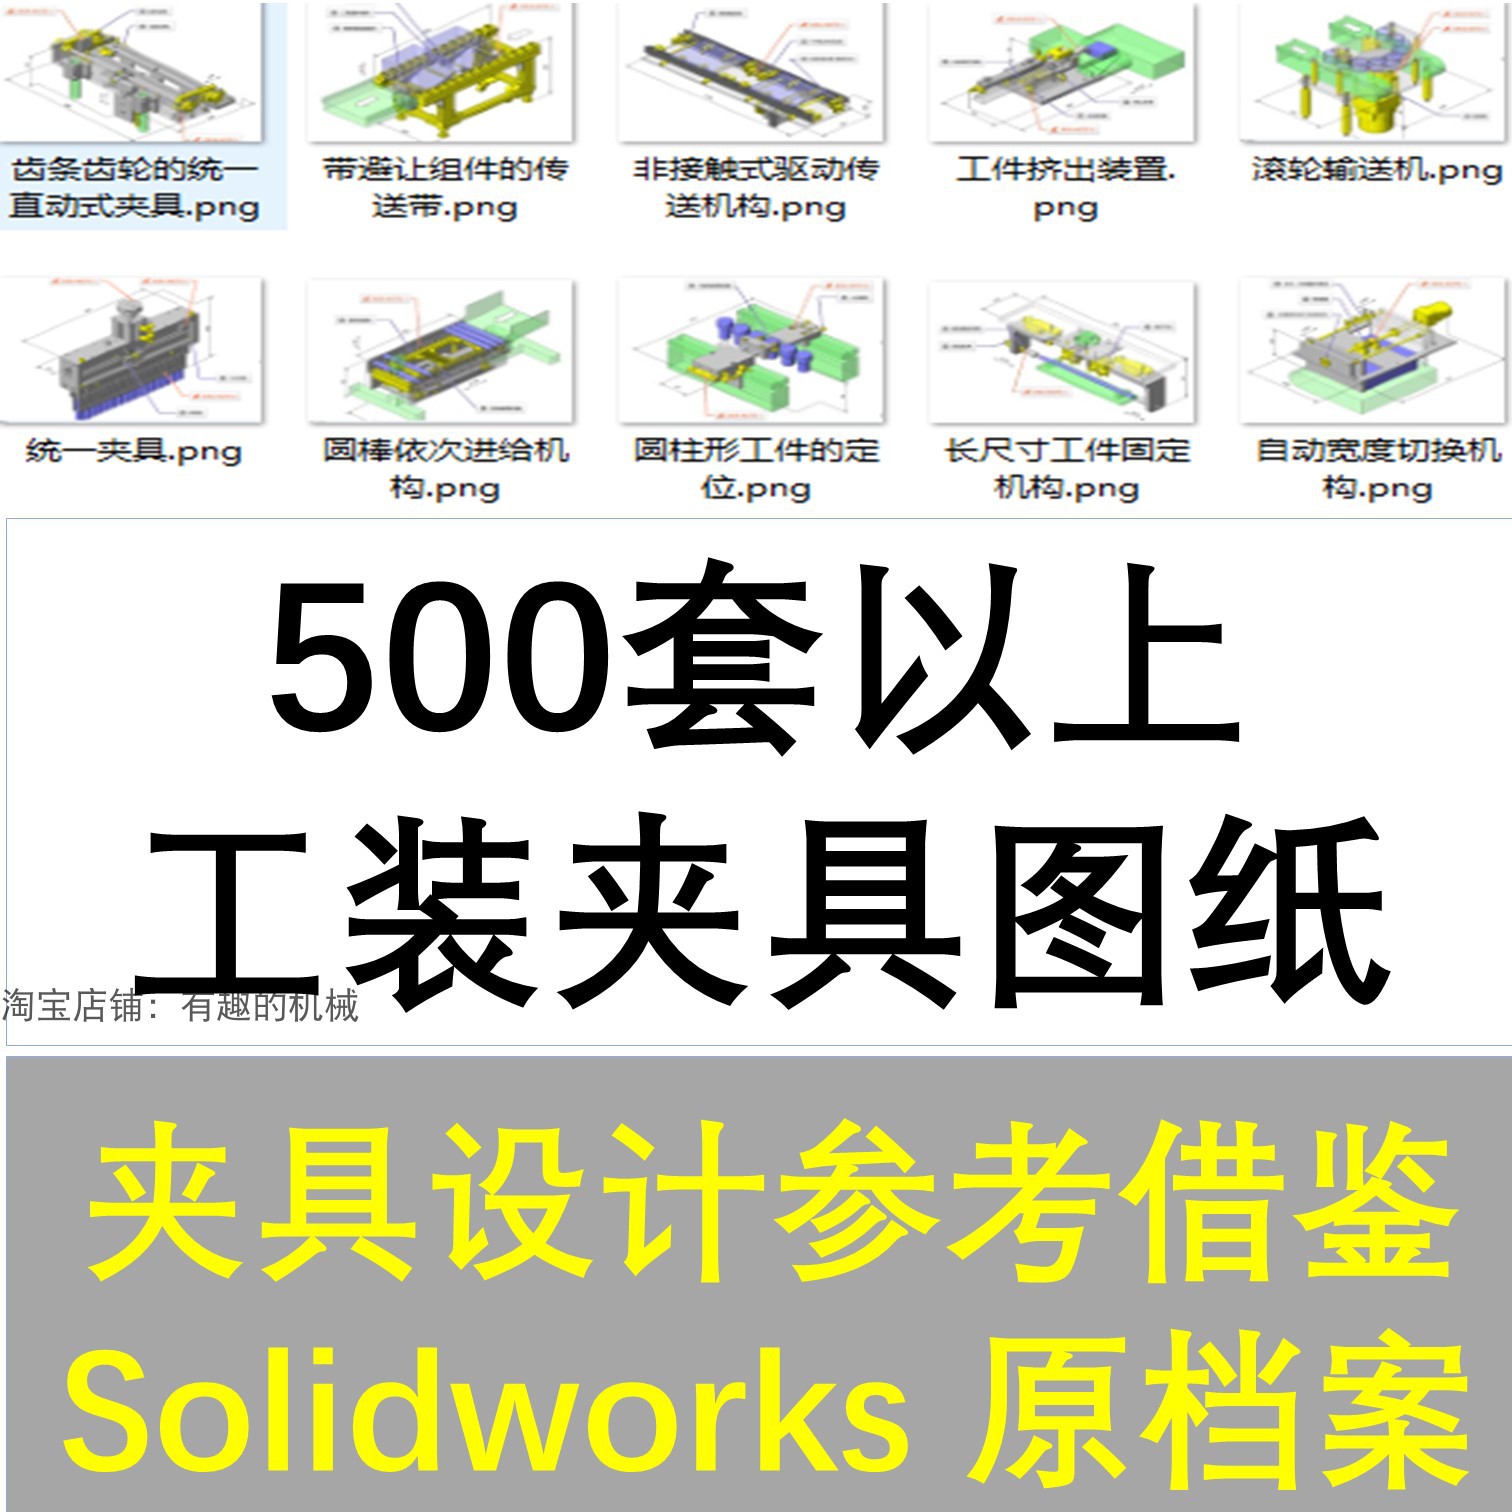 500多套工装夹具夹紧机构检测工装机械三维图纸solidworks格式